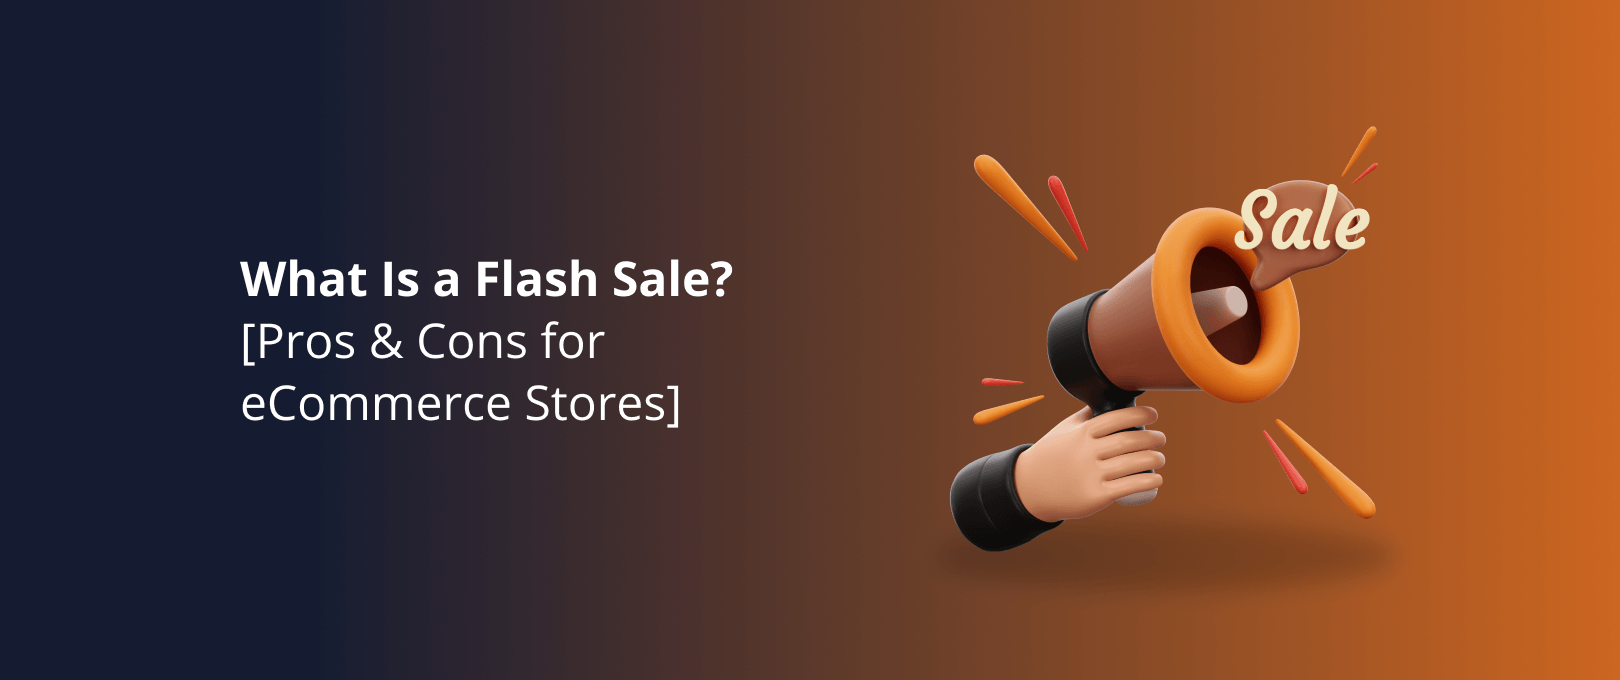 Qué son las ventas flash en ecommerce?